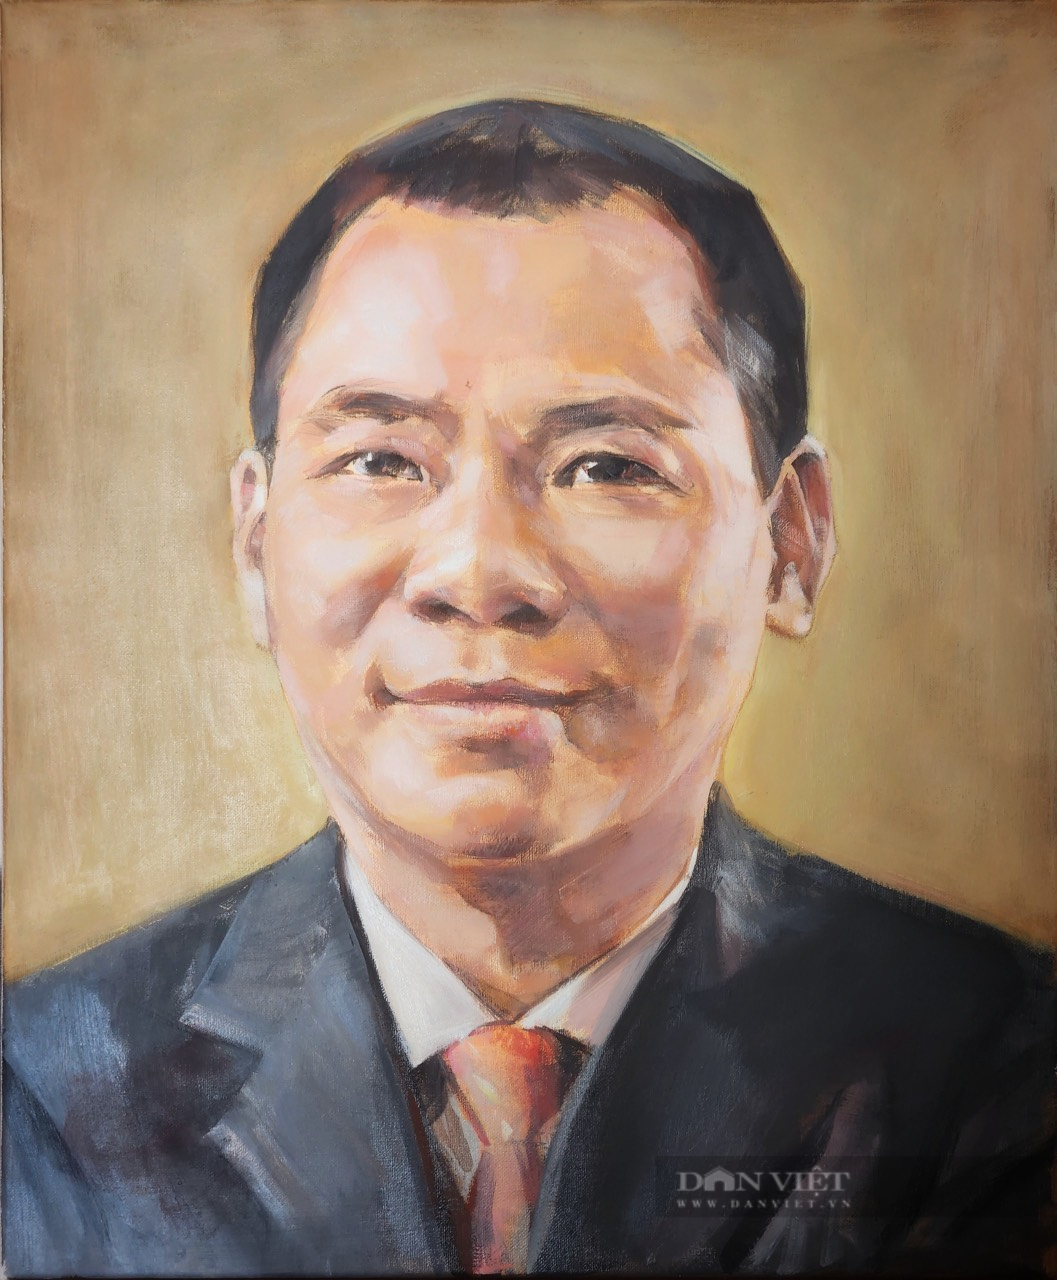 Triển lãm tranh vẽ về doanh nhân Phạm Nhật Vượng, Trương Gia Bình...- Ảnh 8.